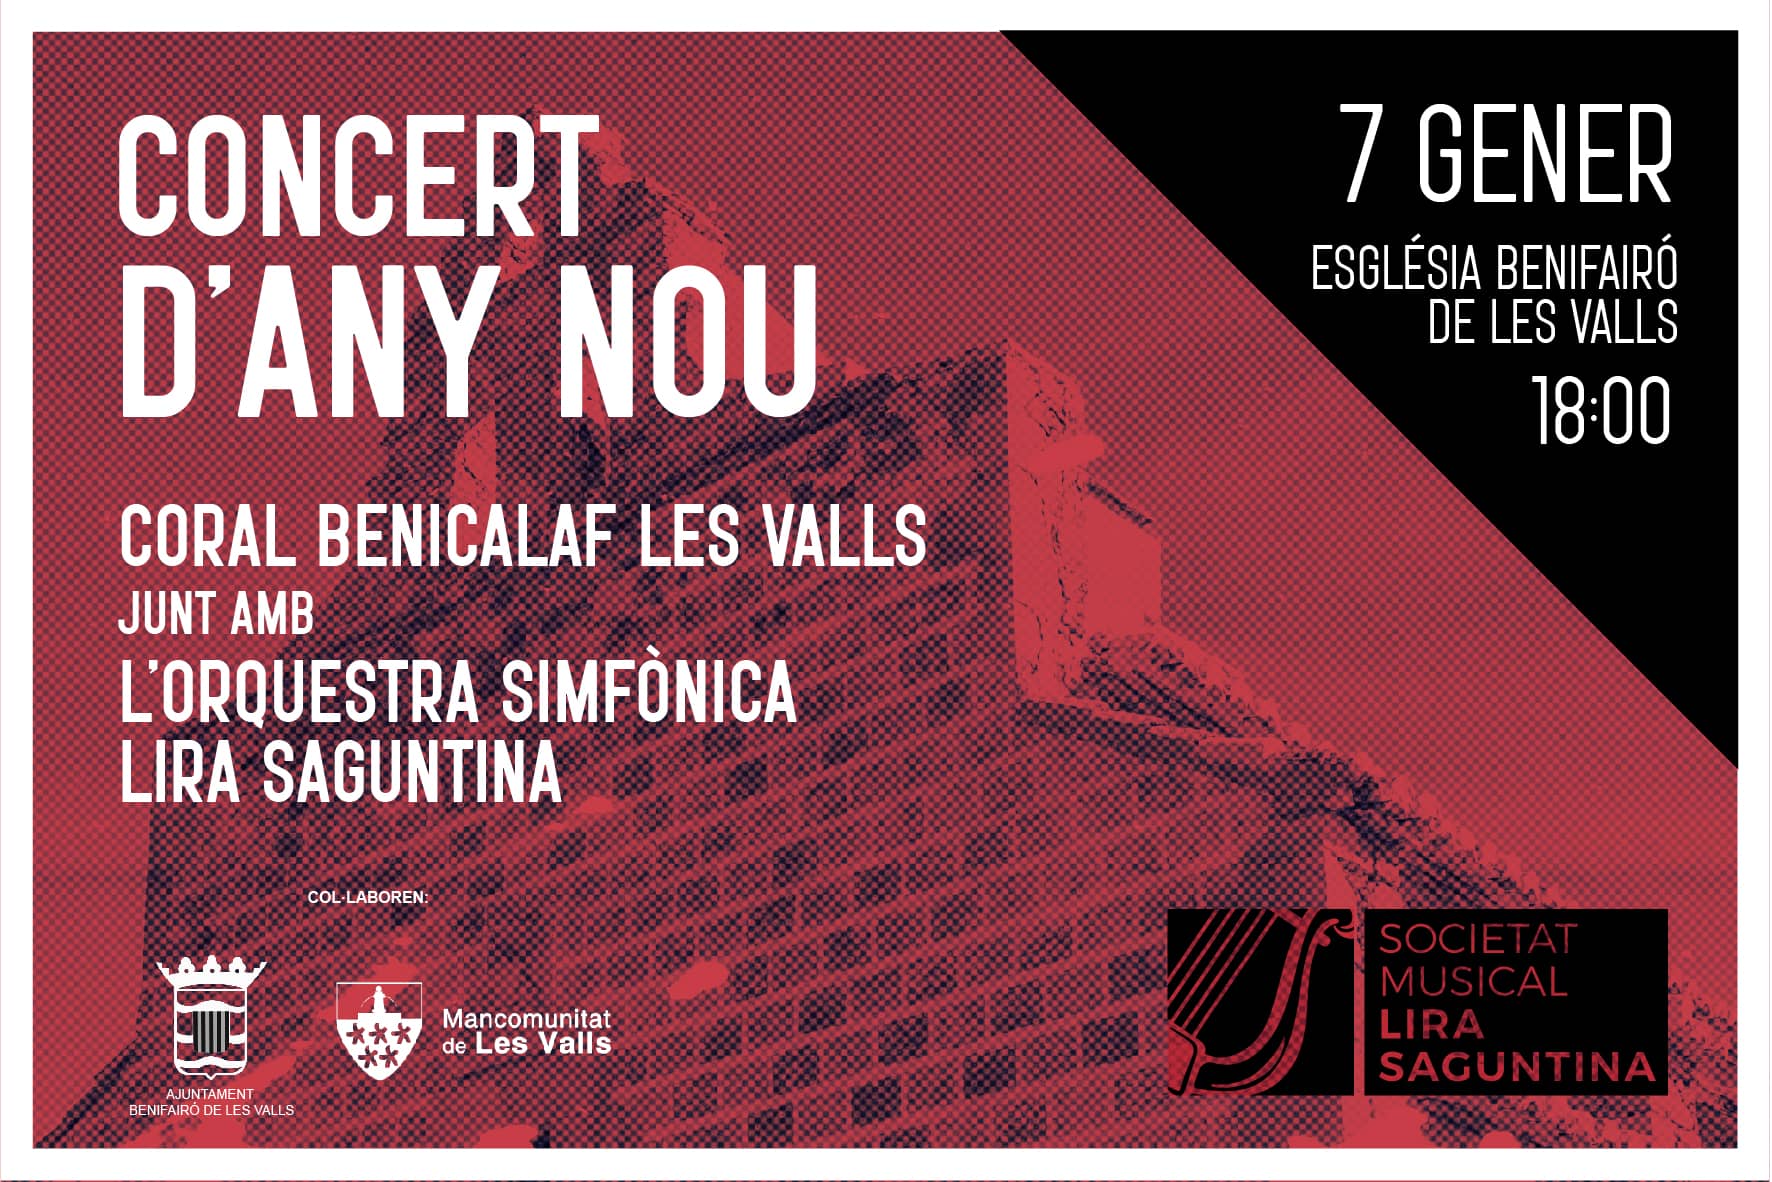 concert_coral_venicalaf_orquesta_simfonica_lira_saguntina_any_nou_benifairo_de_les_vall_morvedre